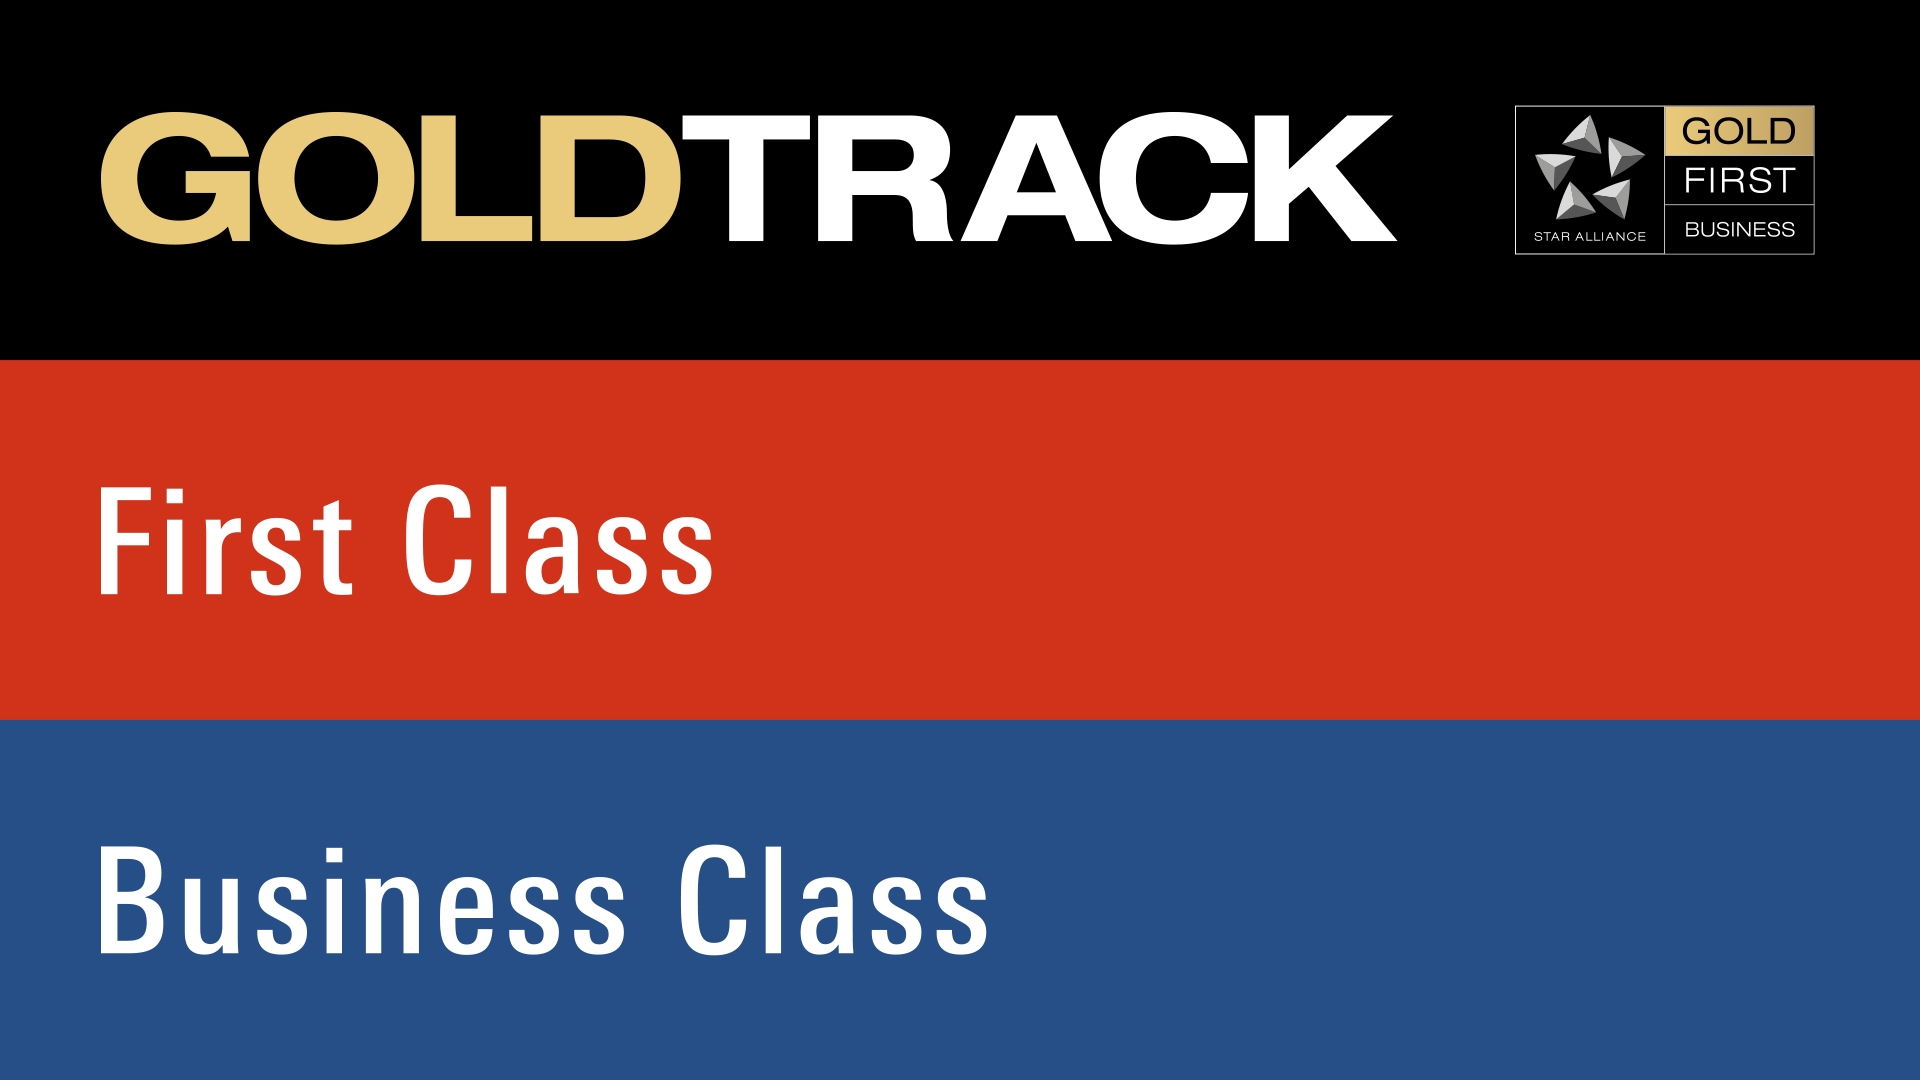 Gold Track in Frankfurt